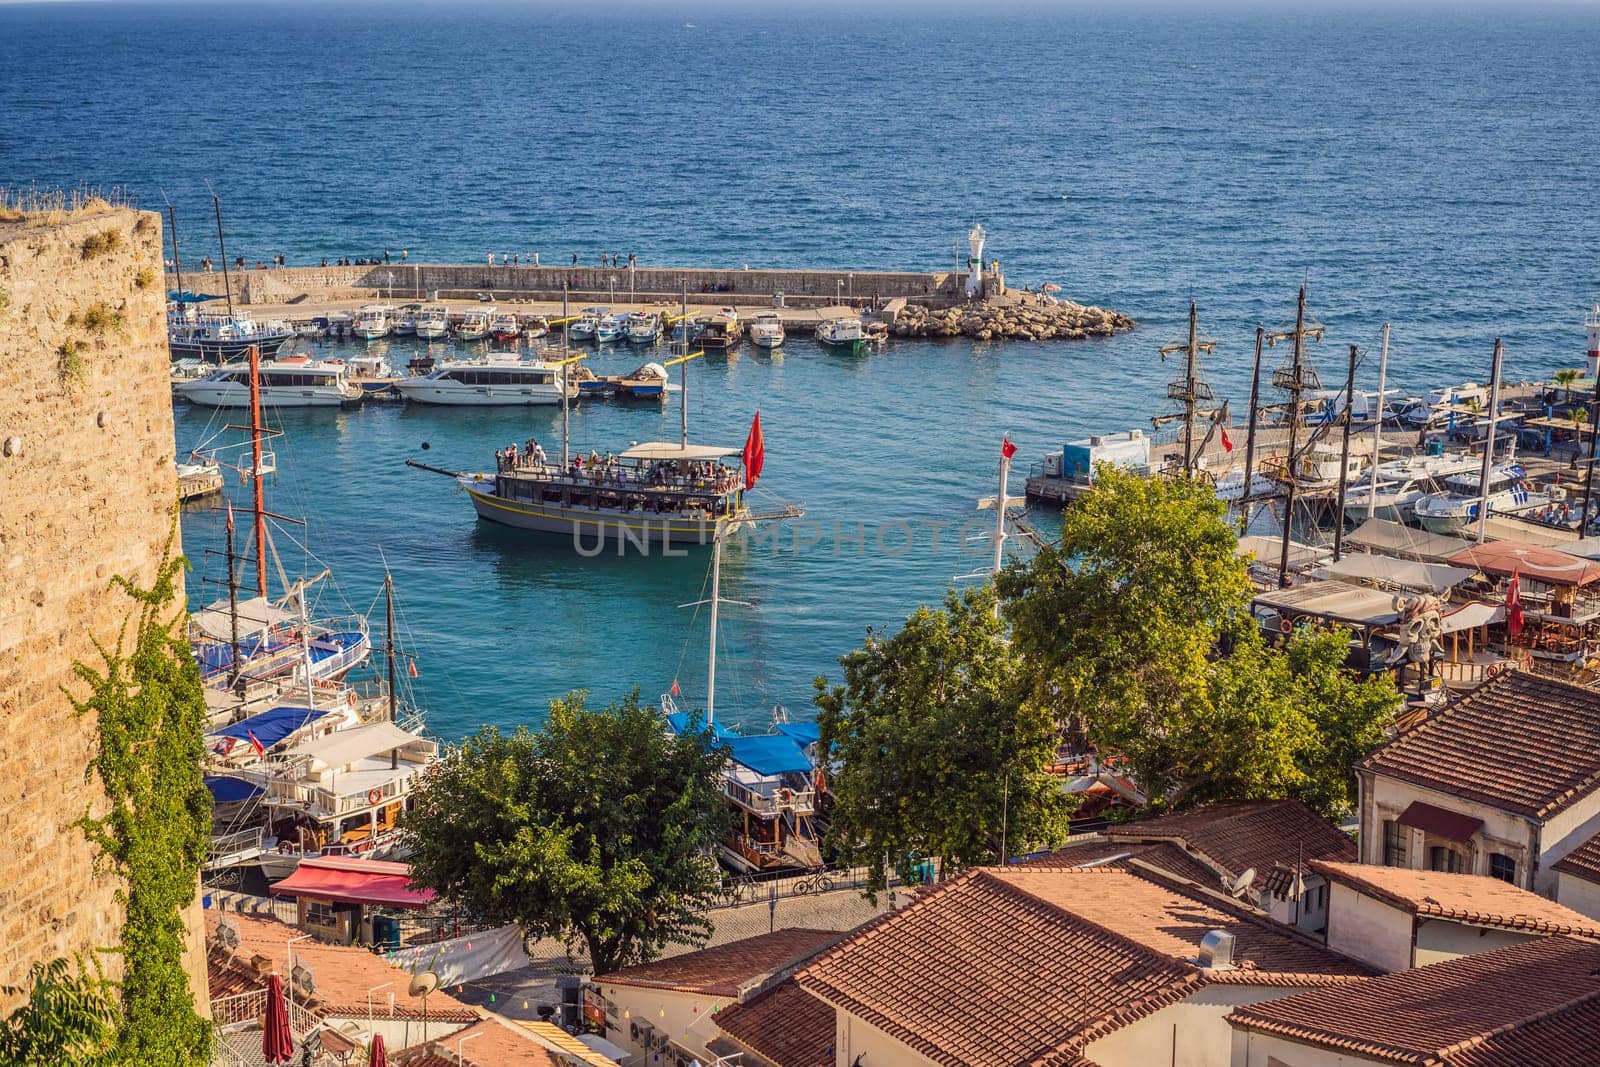 Old town Kaleici in Antalya. Panoramic view of Antalya Old Town port, Taurus mountains and Mediterrranean Sea, Turkey by galitskaya